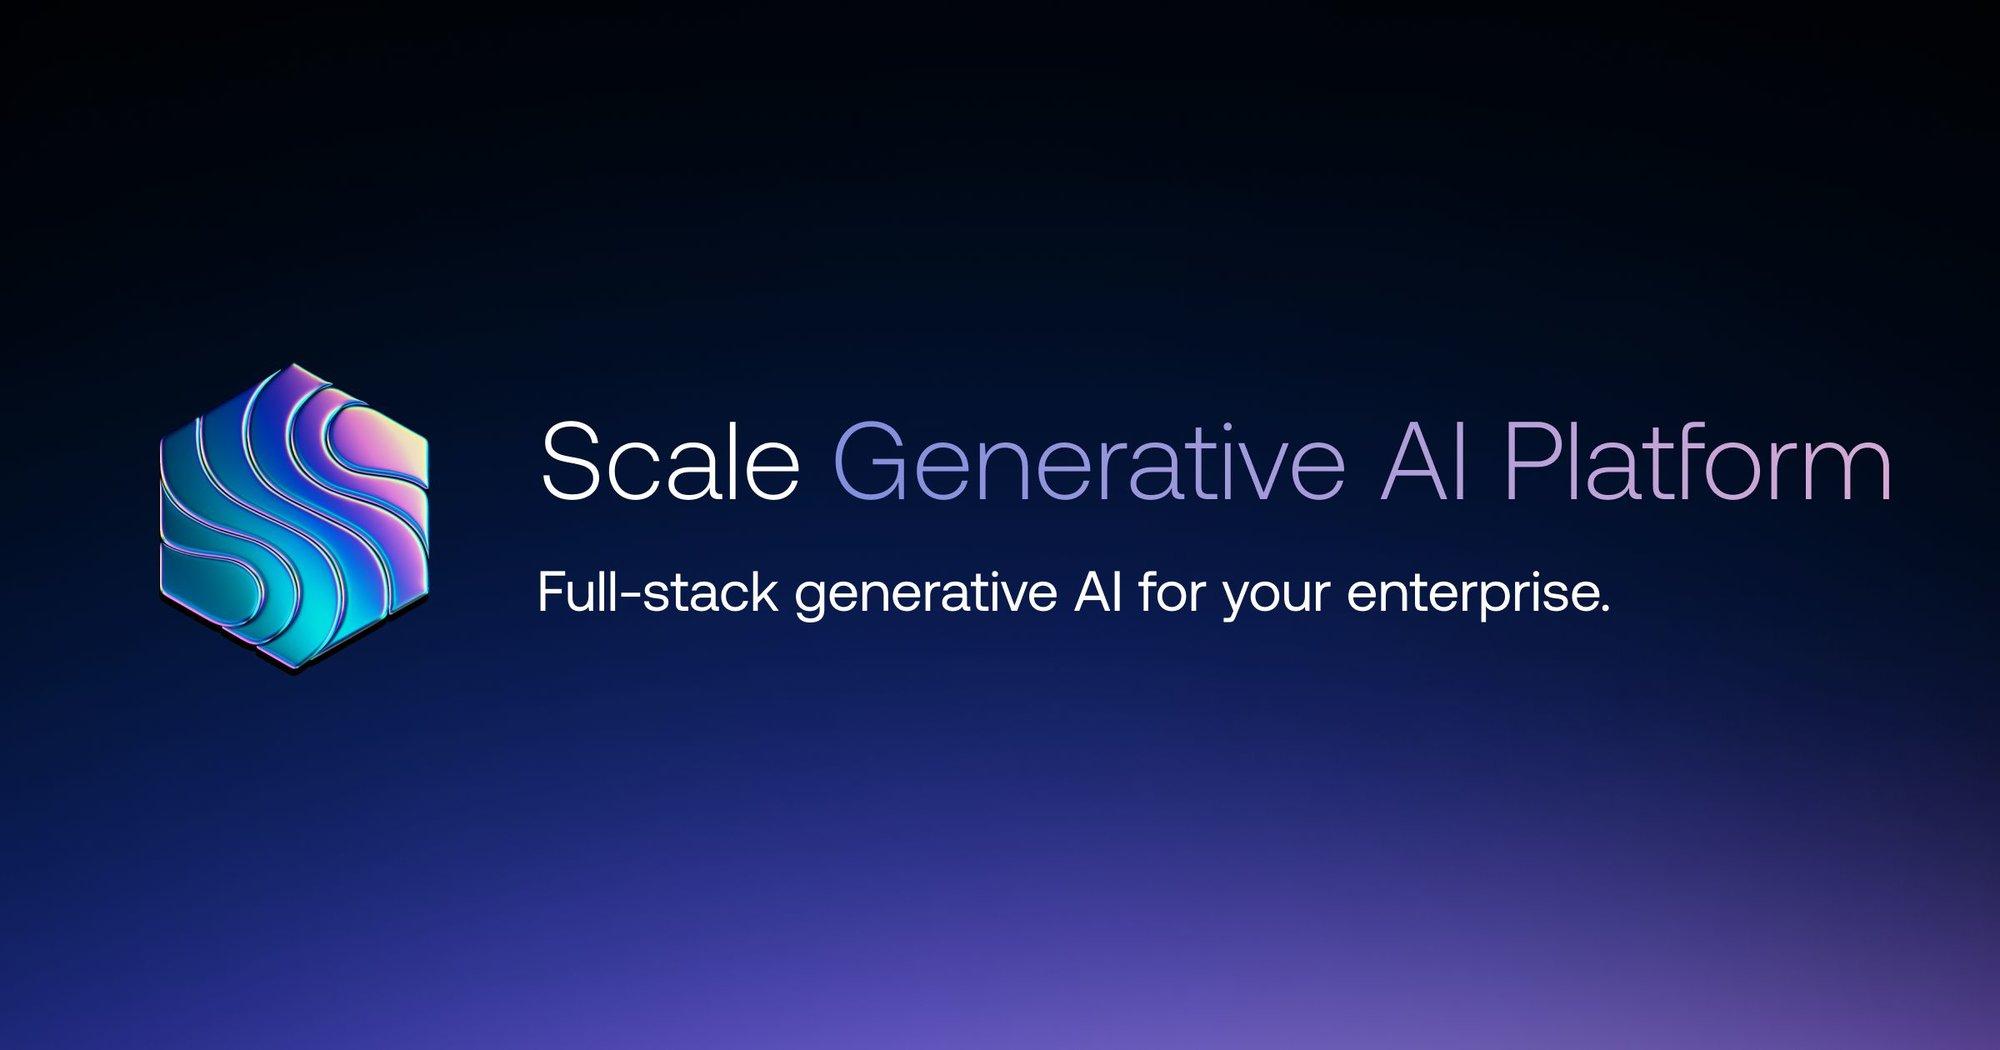 Product: Enterprise Generative AI Platform | Scale AI